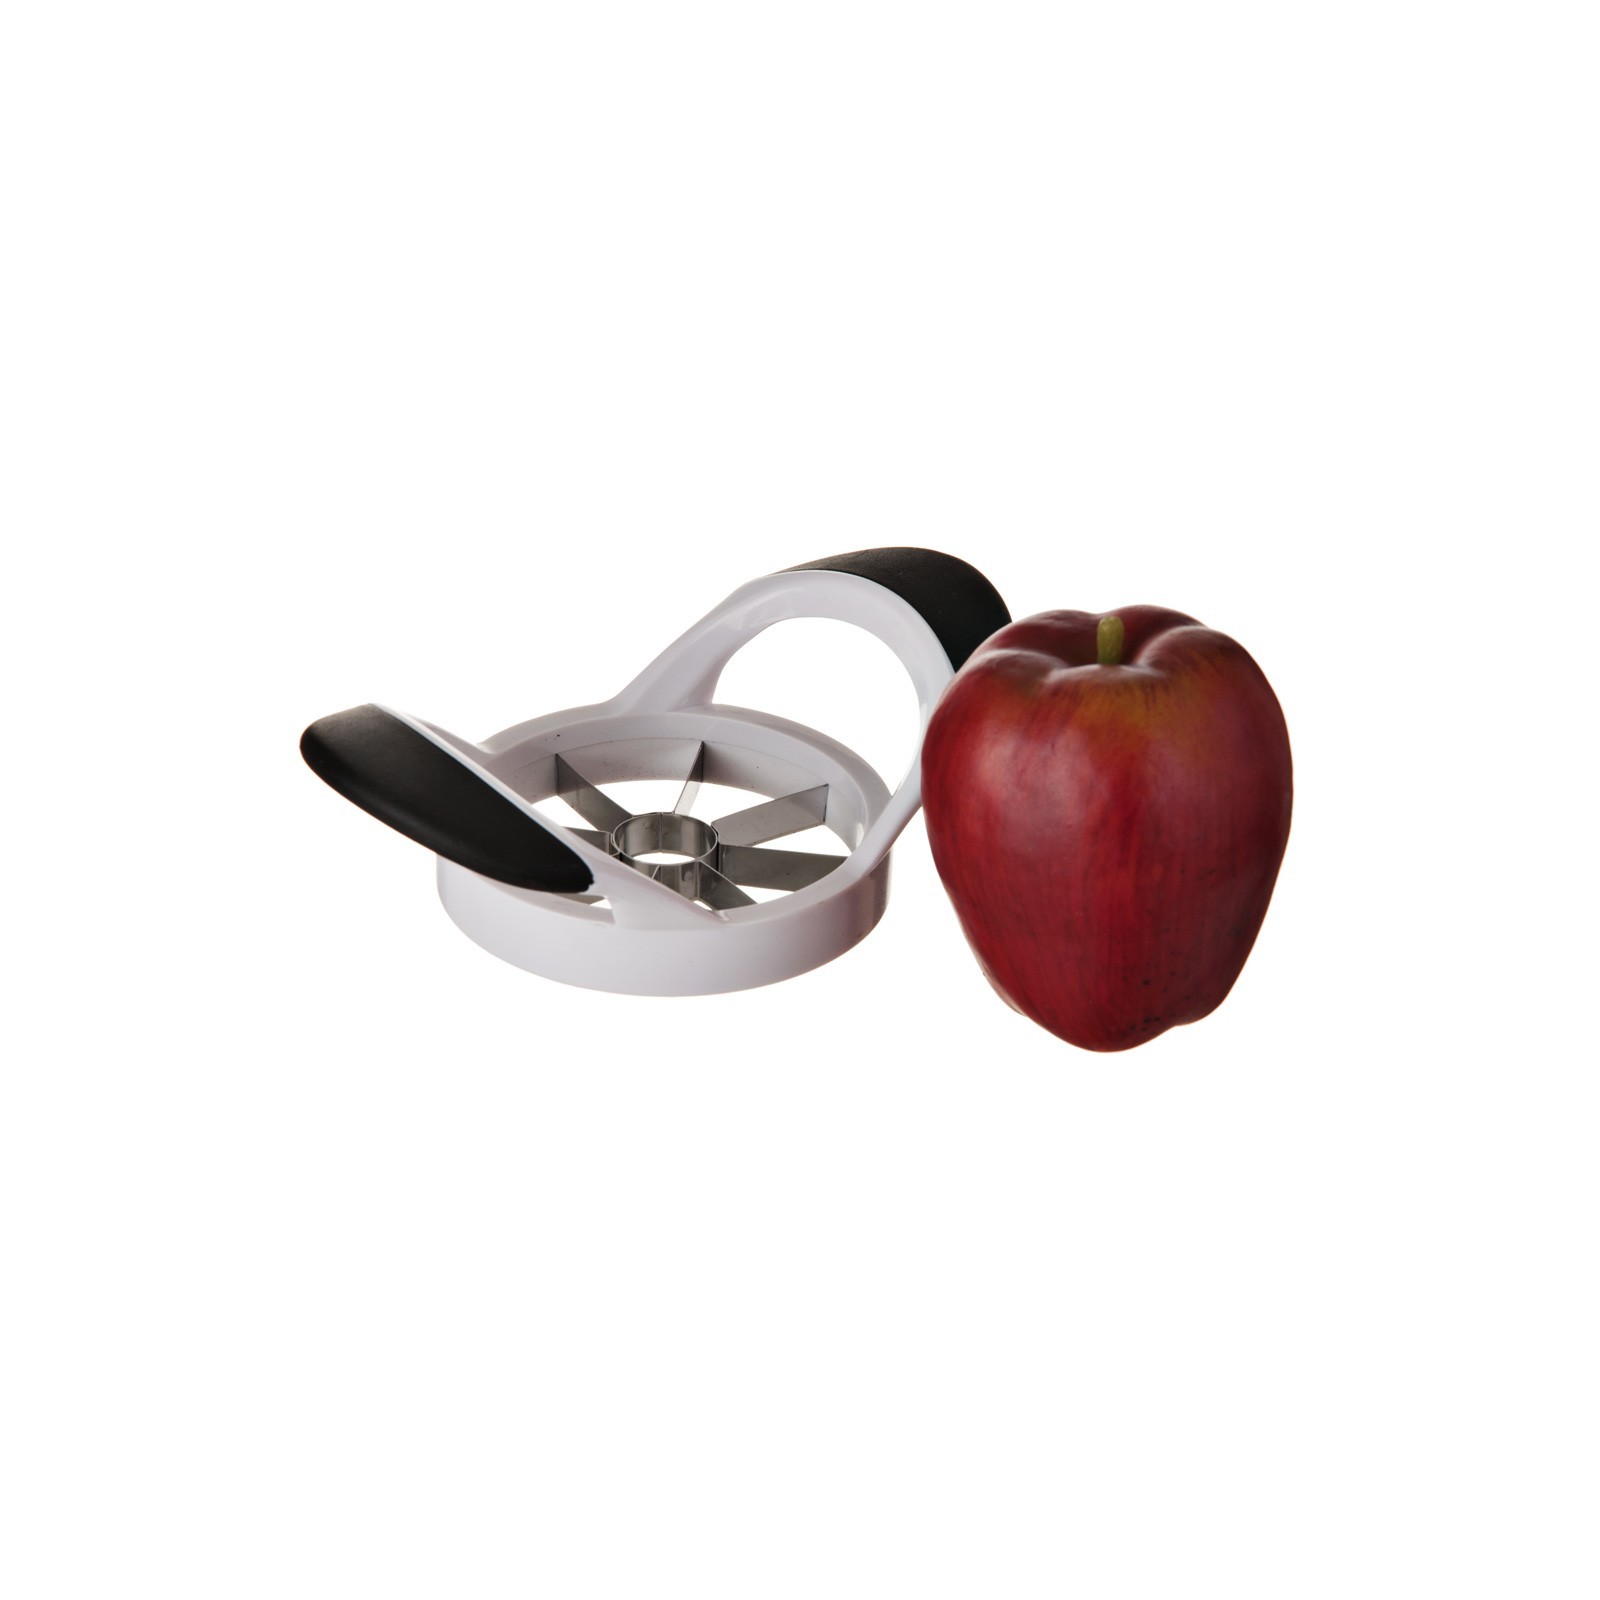 Cortador para manzana acero inoxidable / plástico